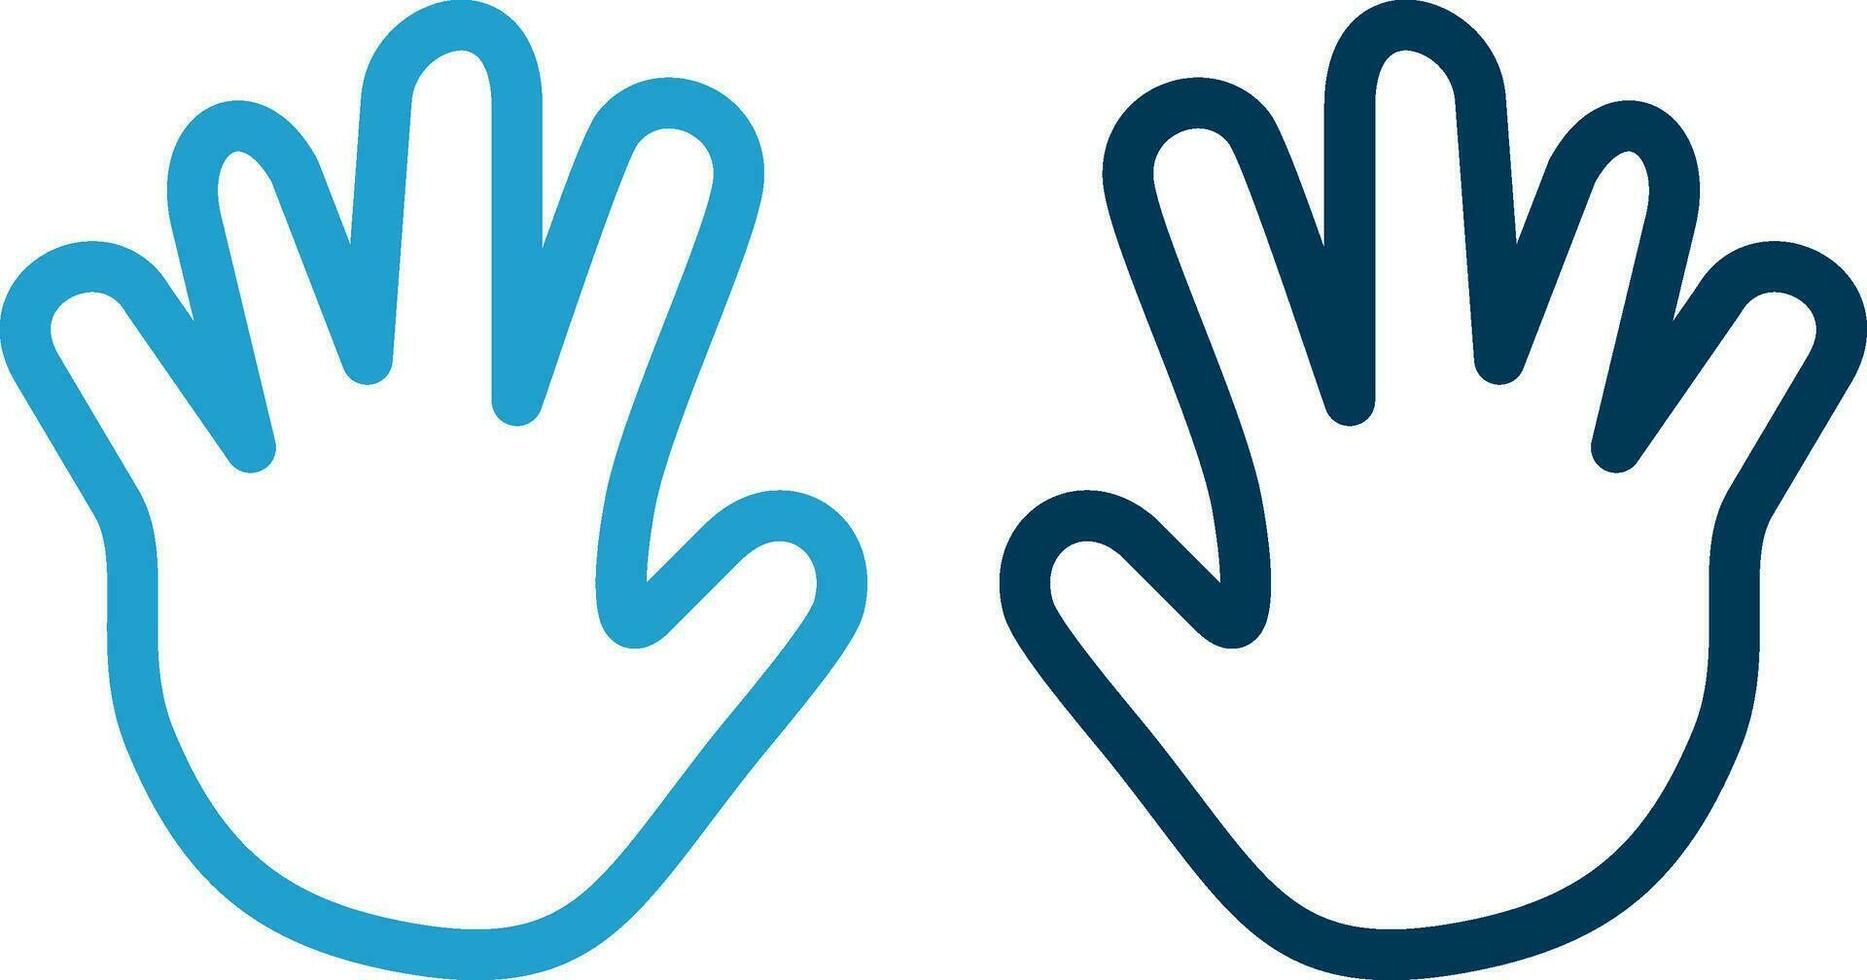 design de ícone de vetor de mãos